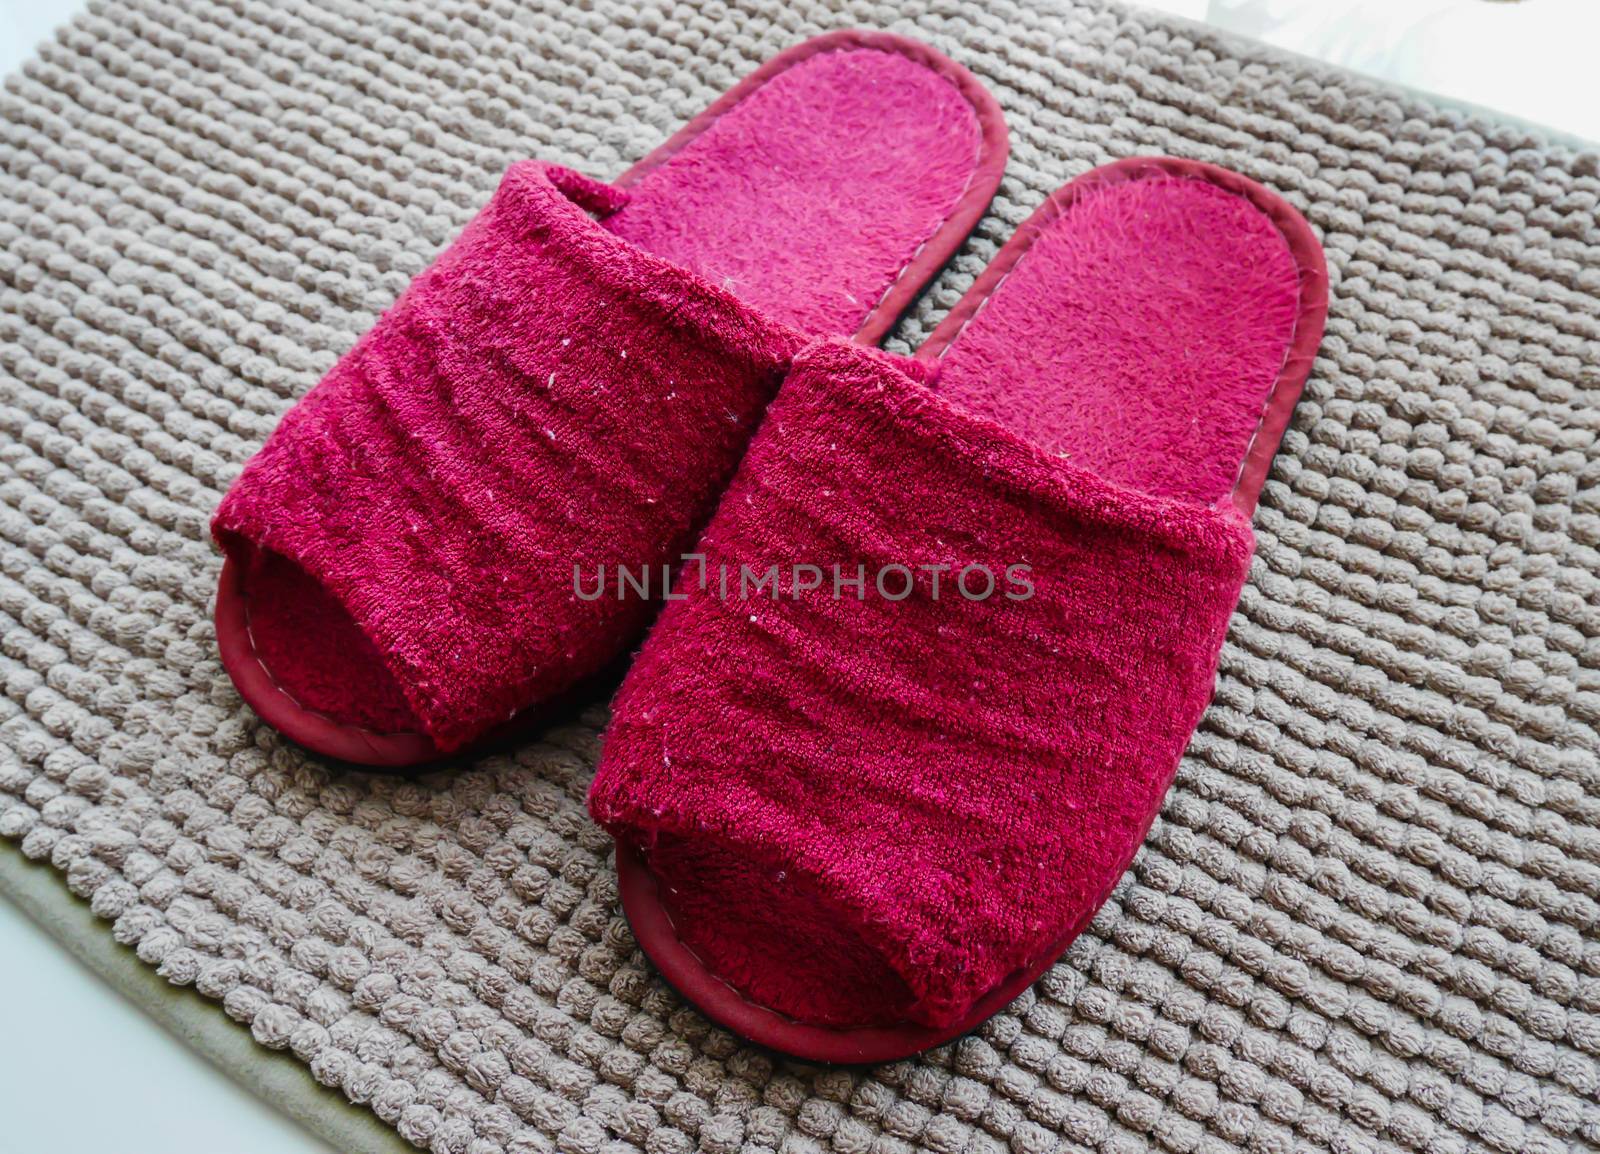 Red slipper on brown carpet 